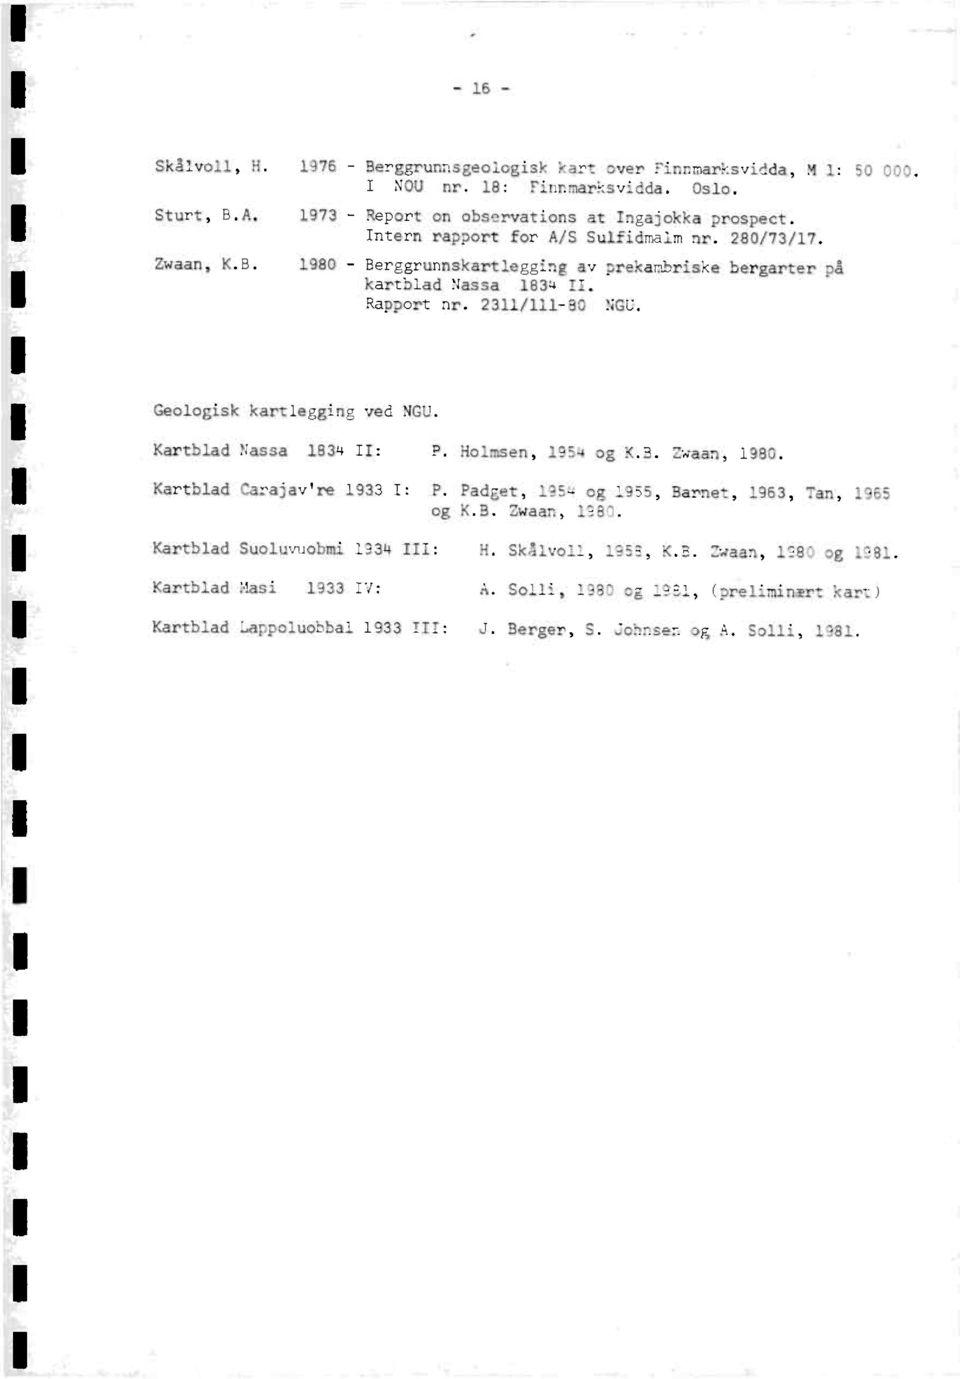 Geologiskkartleggingved NGU. KartbladNassa 1834 II: P. Holmsen,1954 og K.B. Zwaan, 1980. KartbladCarajav're1933 I: P. Padget, 1954 og 1955, Barnet, 1963, Tan, 1965 og K.B. Zwaan, 1980. KartbladSuoluvuobmi1934 III: H.